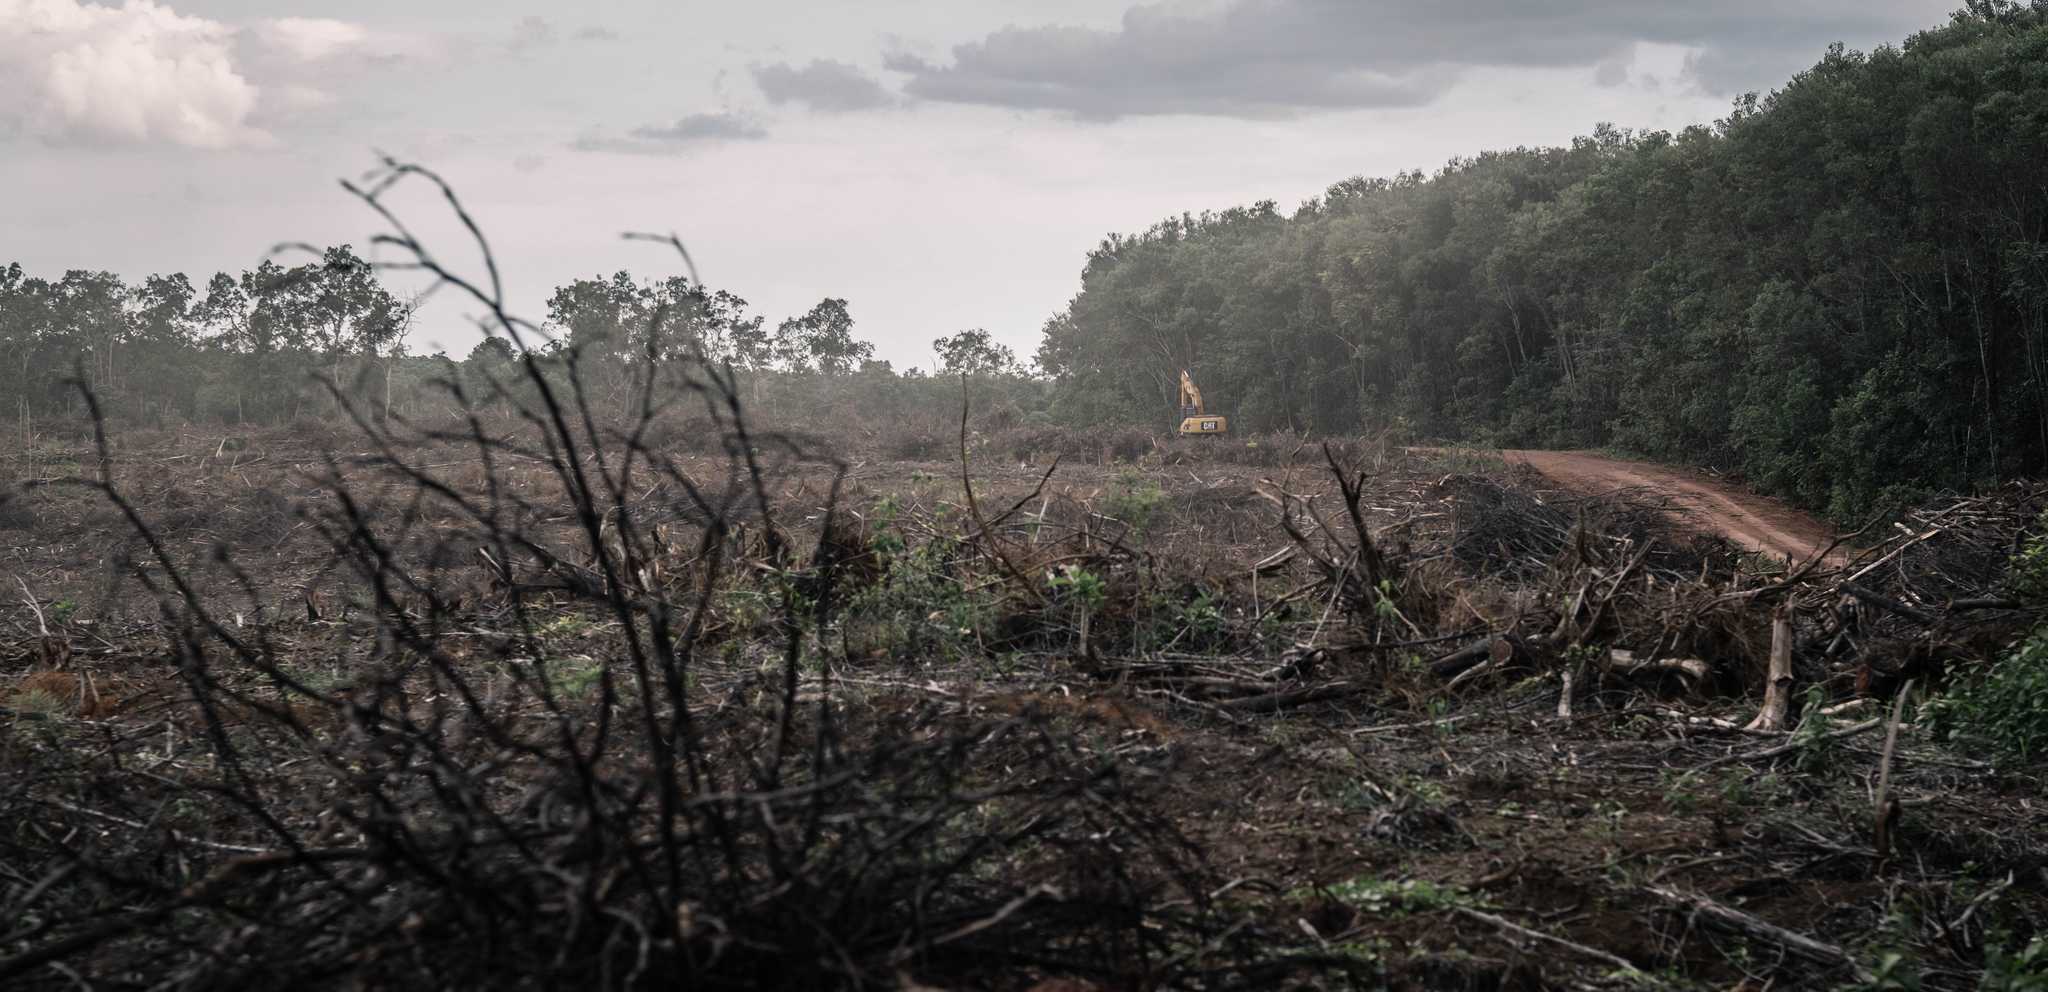 Pembangunan perkebunan HTI Medco berujung hutan-hutan menjadi gundul.